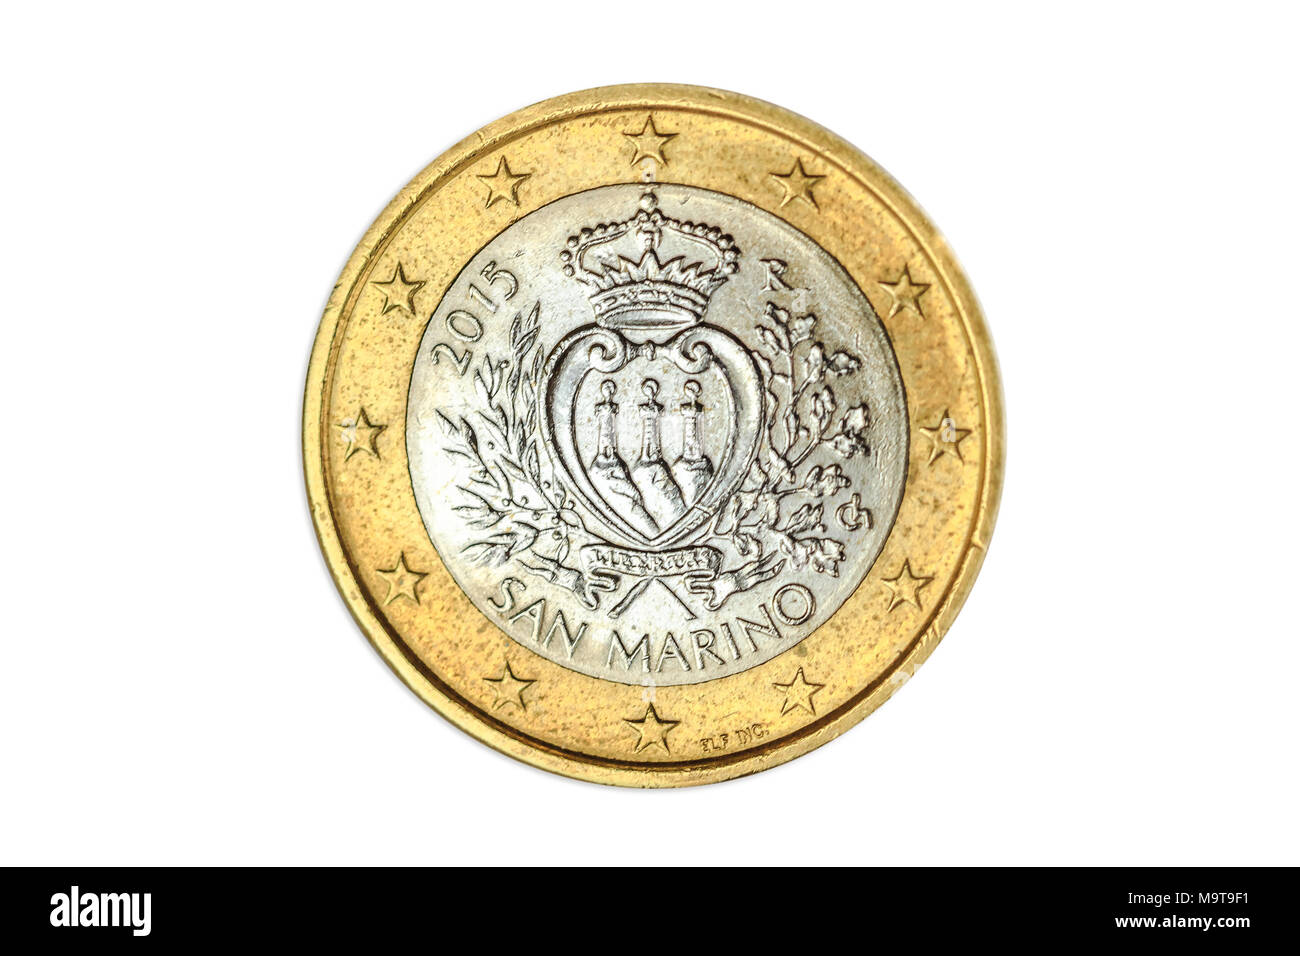 Pièce de 1 euro italienne close-up de San Marin en Italie, côté tête. Isolé sur fond blanc studio. Banque D'Images